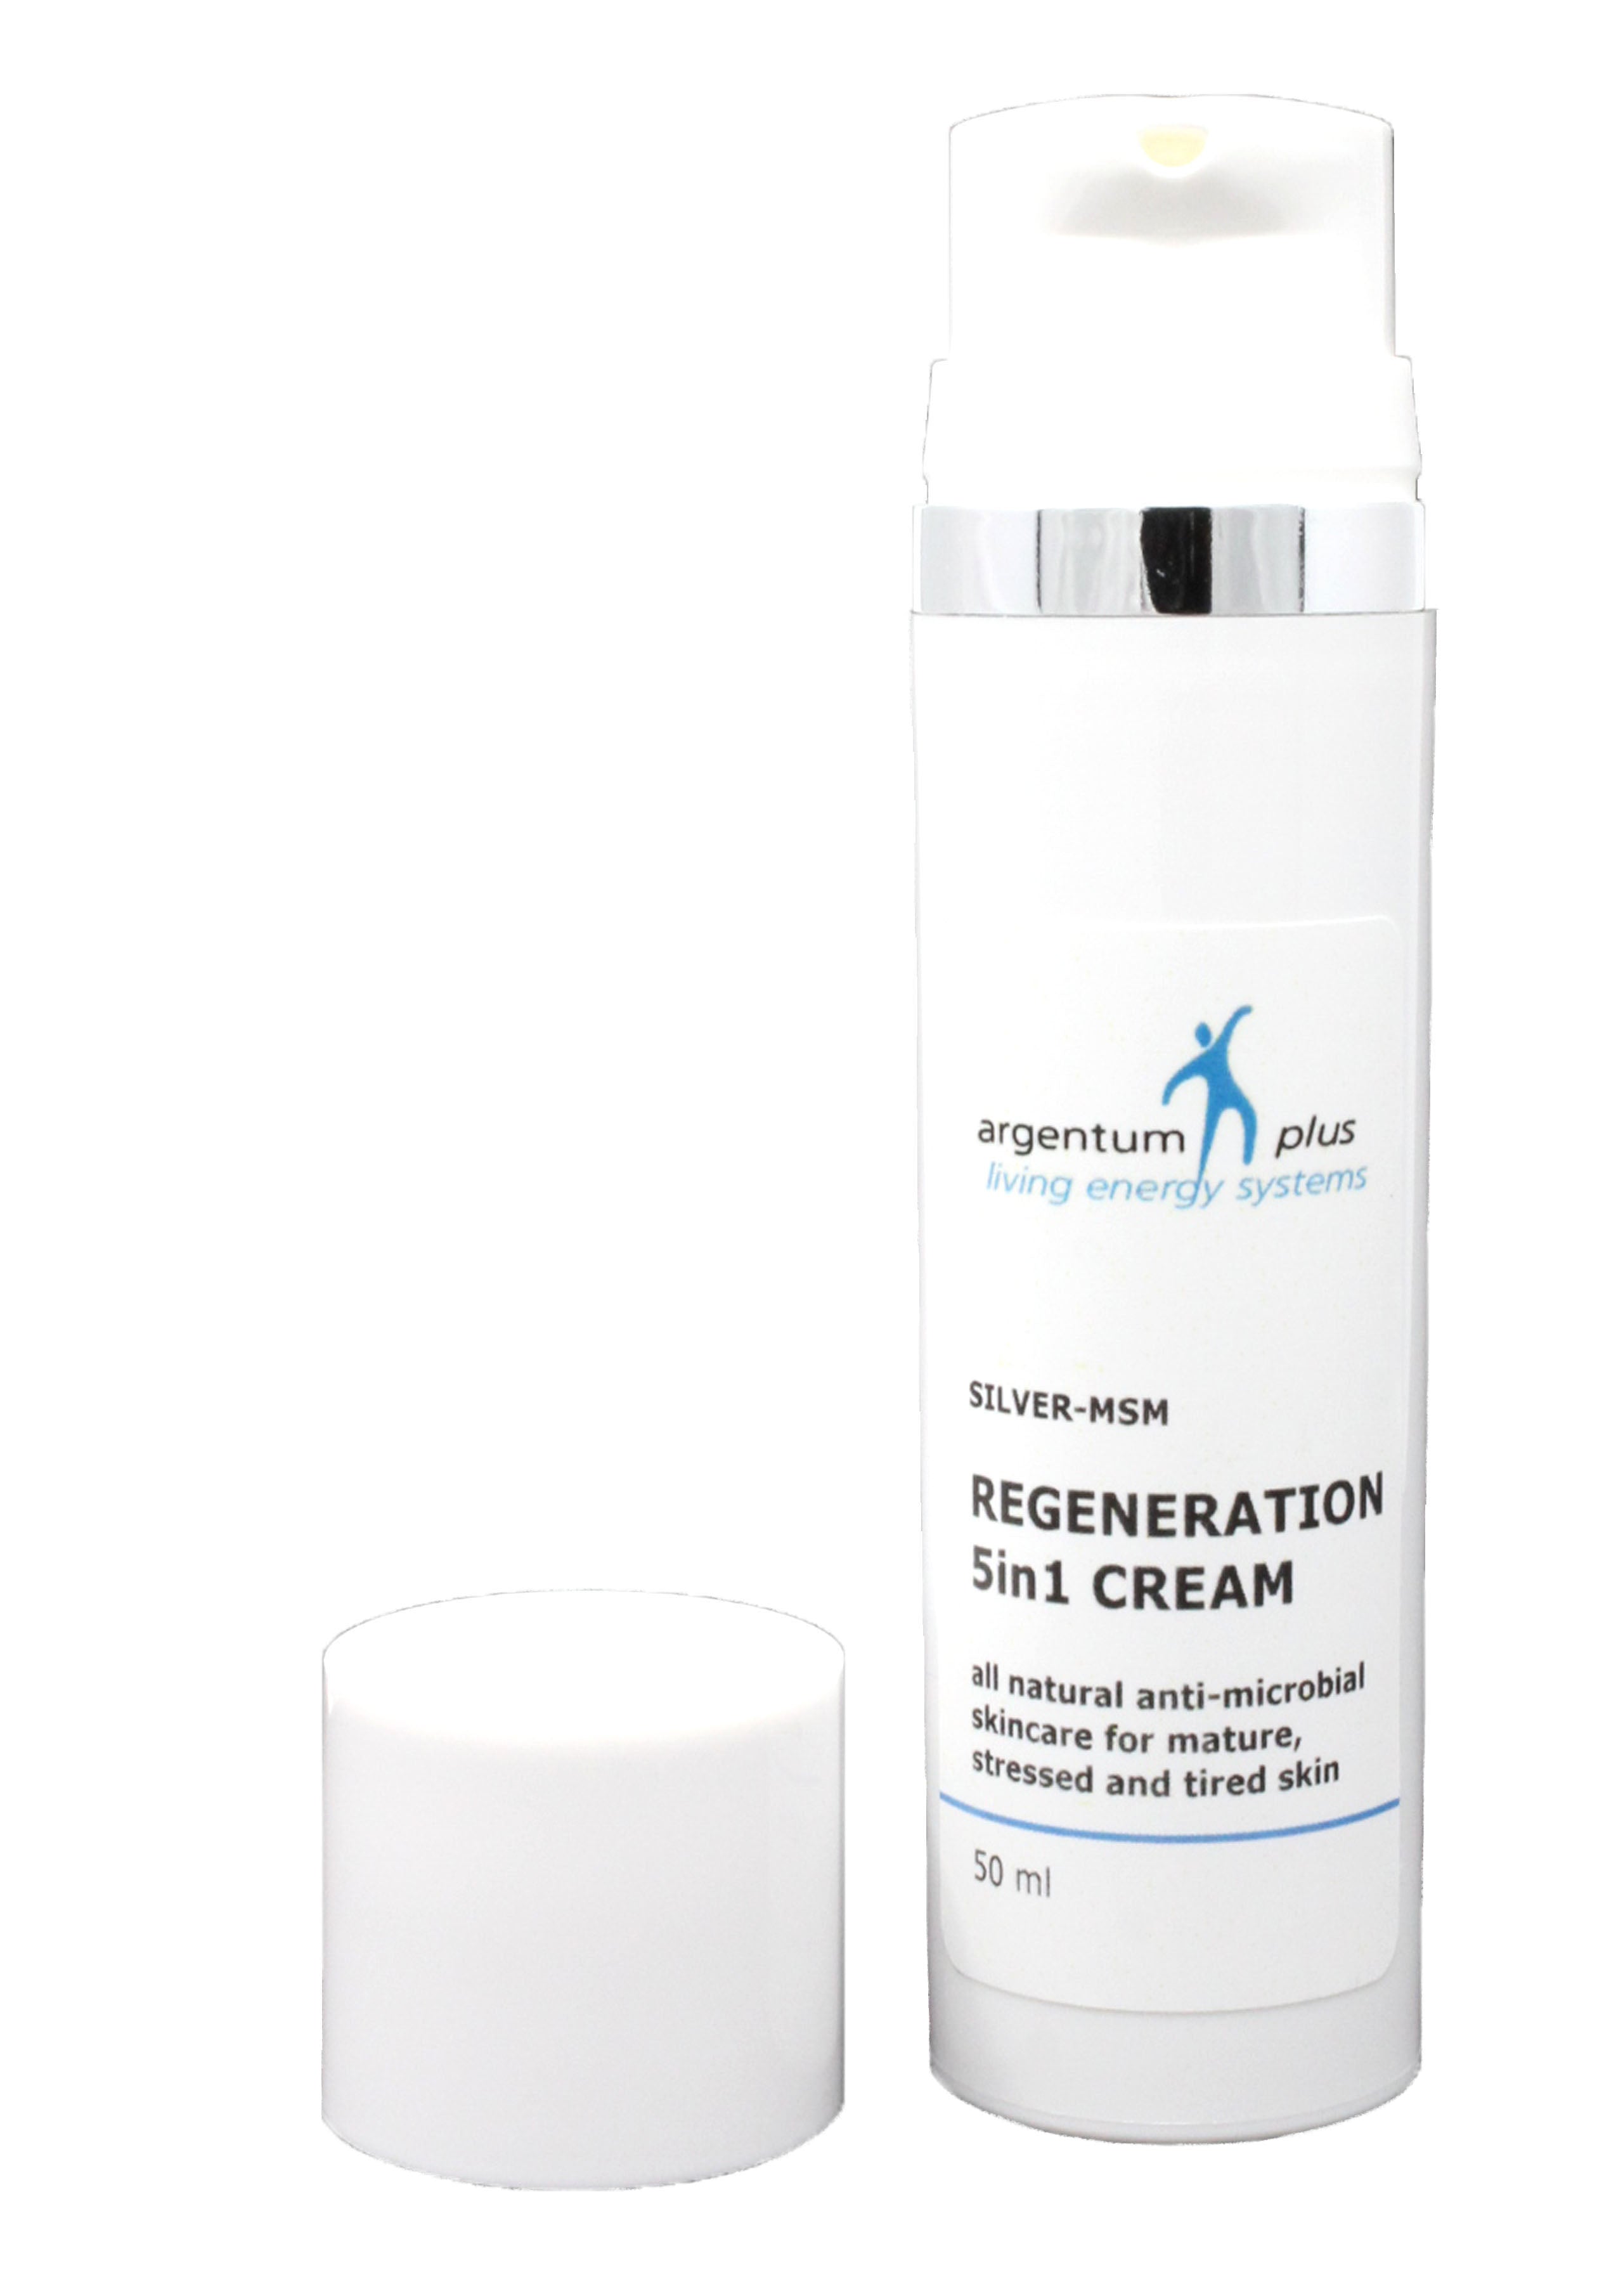 Argentum Plus Silver-MSM Regeneration 5 in 1 Cream